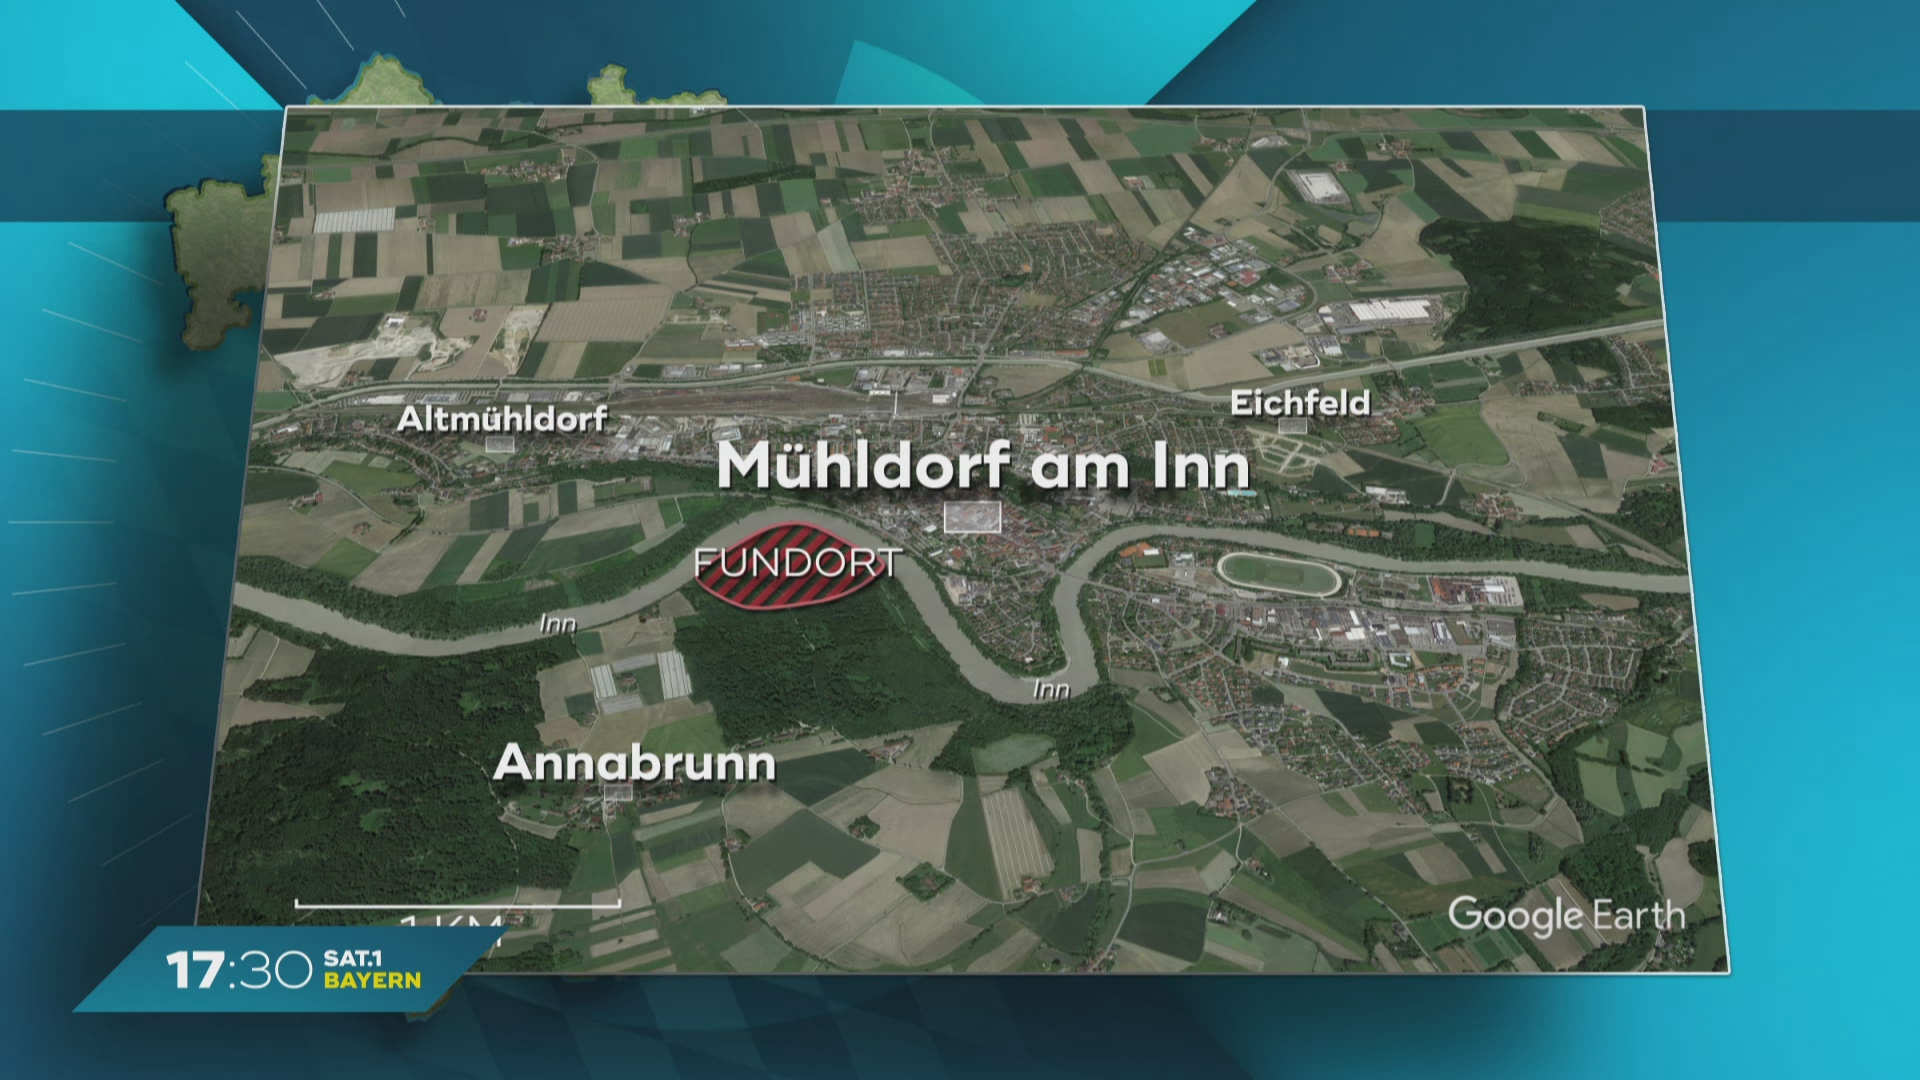 Skelett-Fund bei Mühldorf am Inn: Polizei bittet um Hinweise